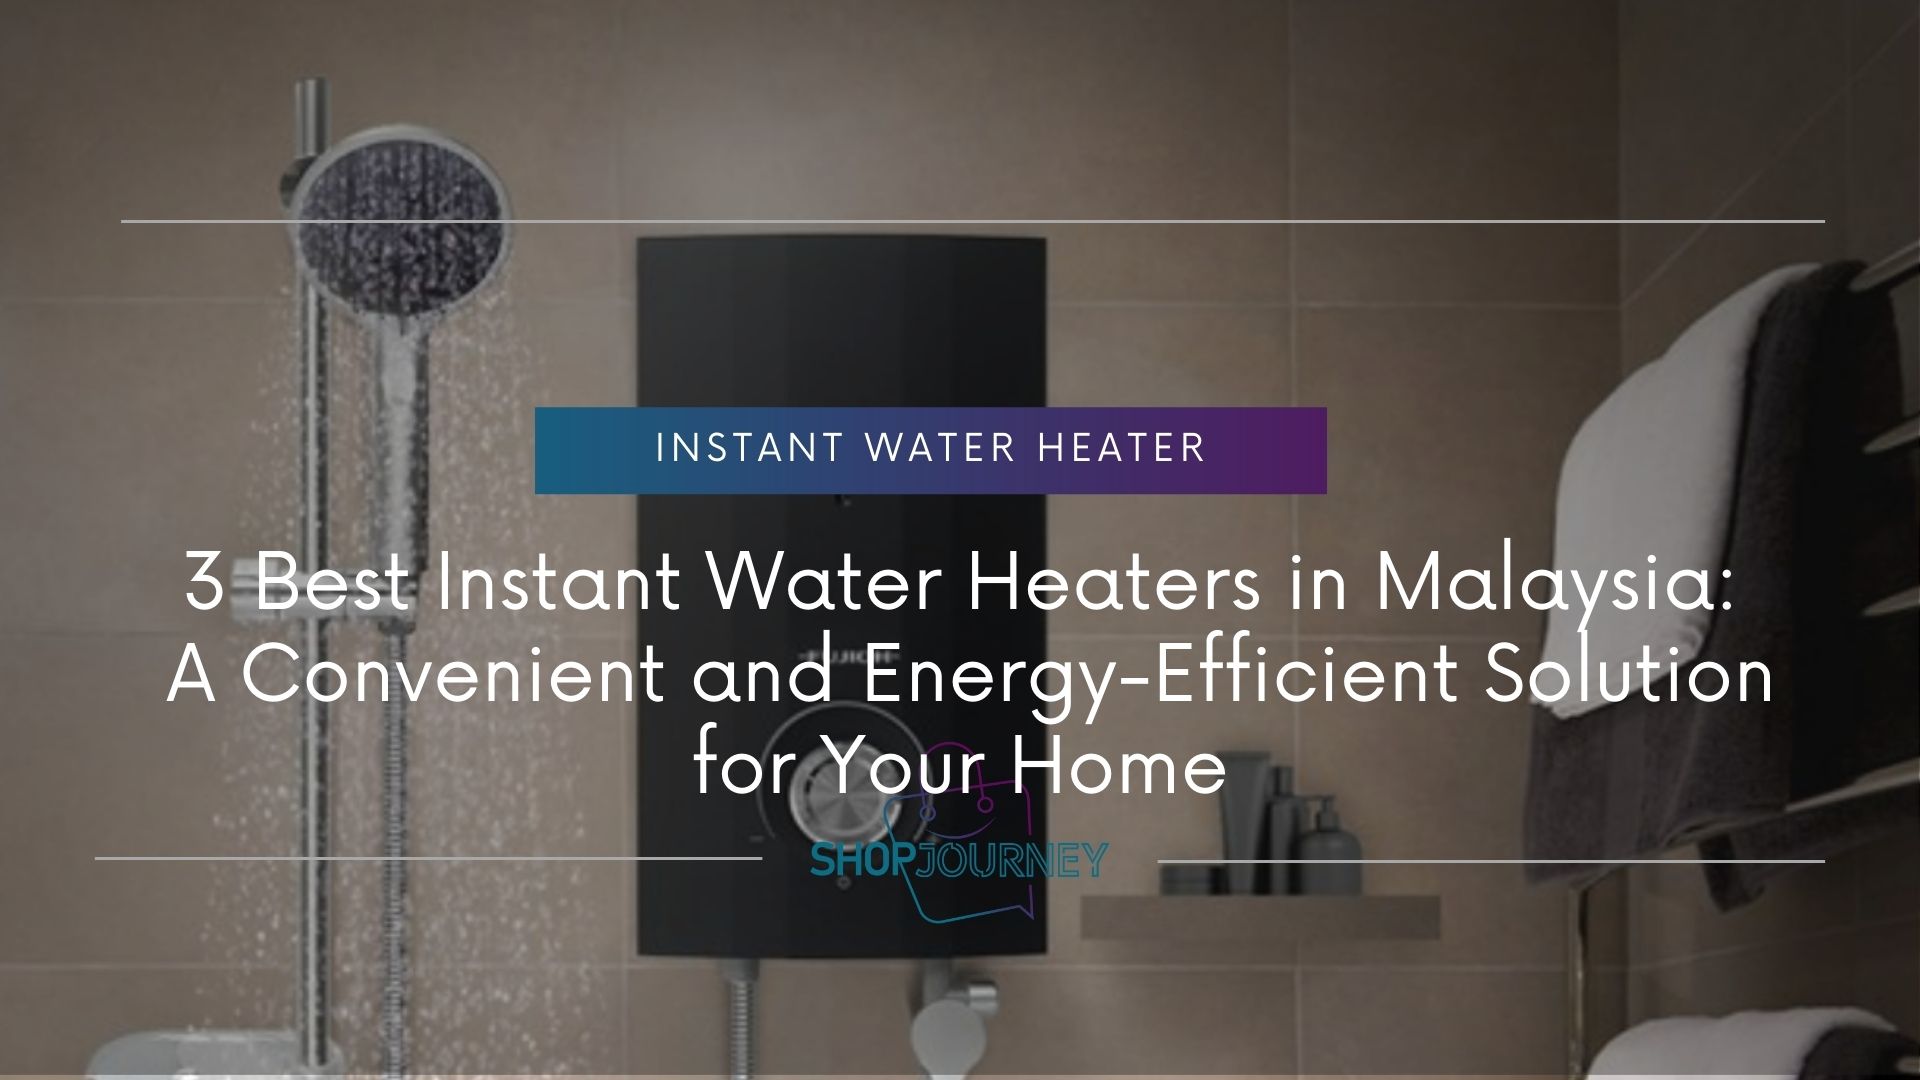 Instant water heater - shop journey